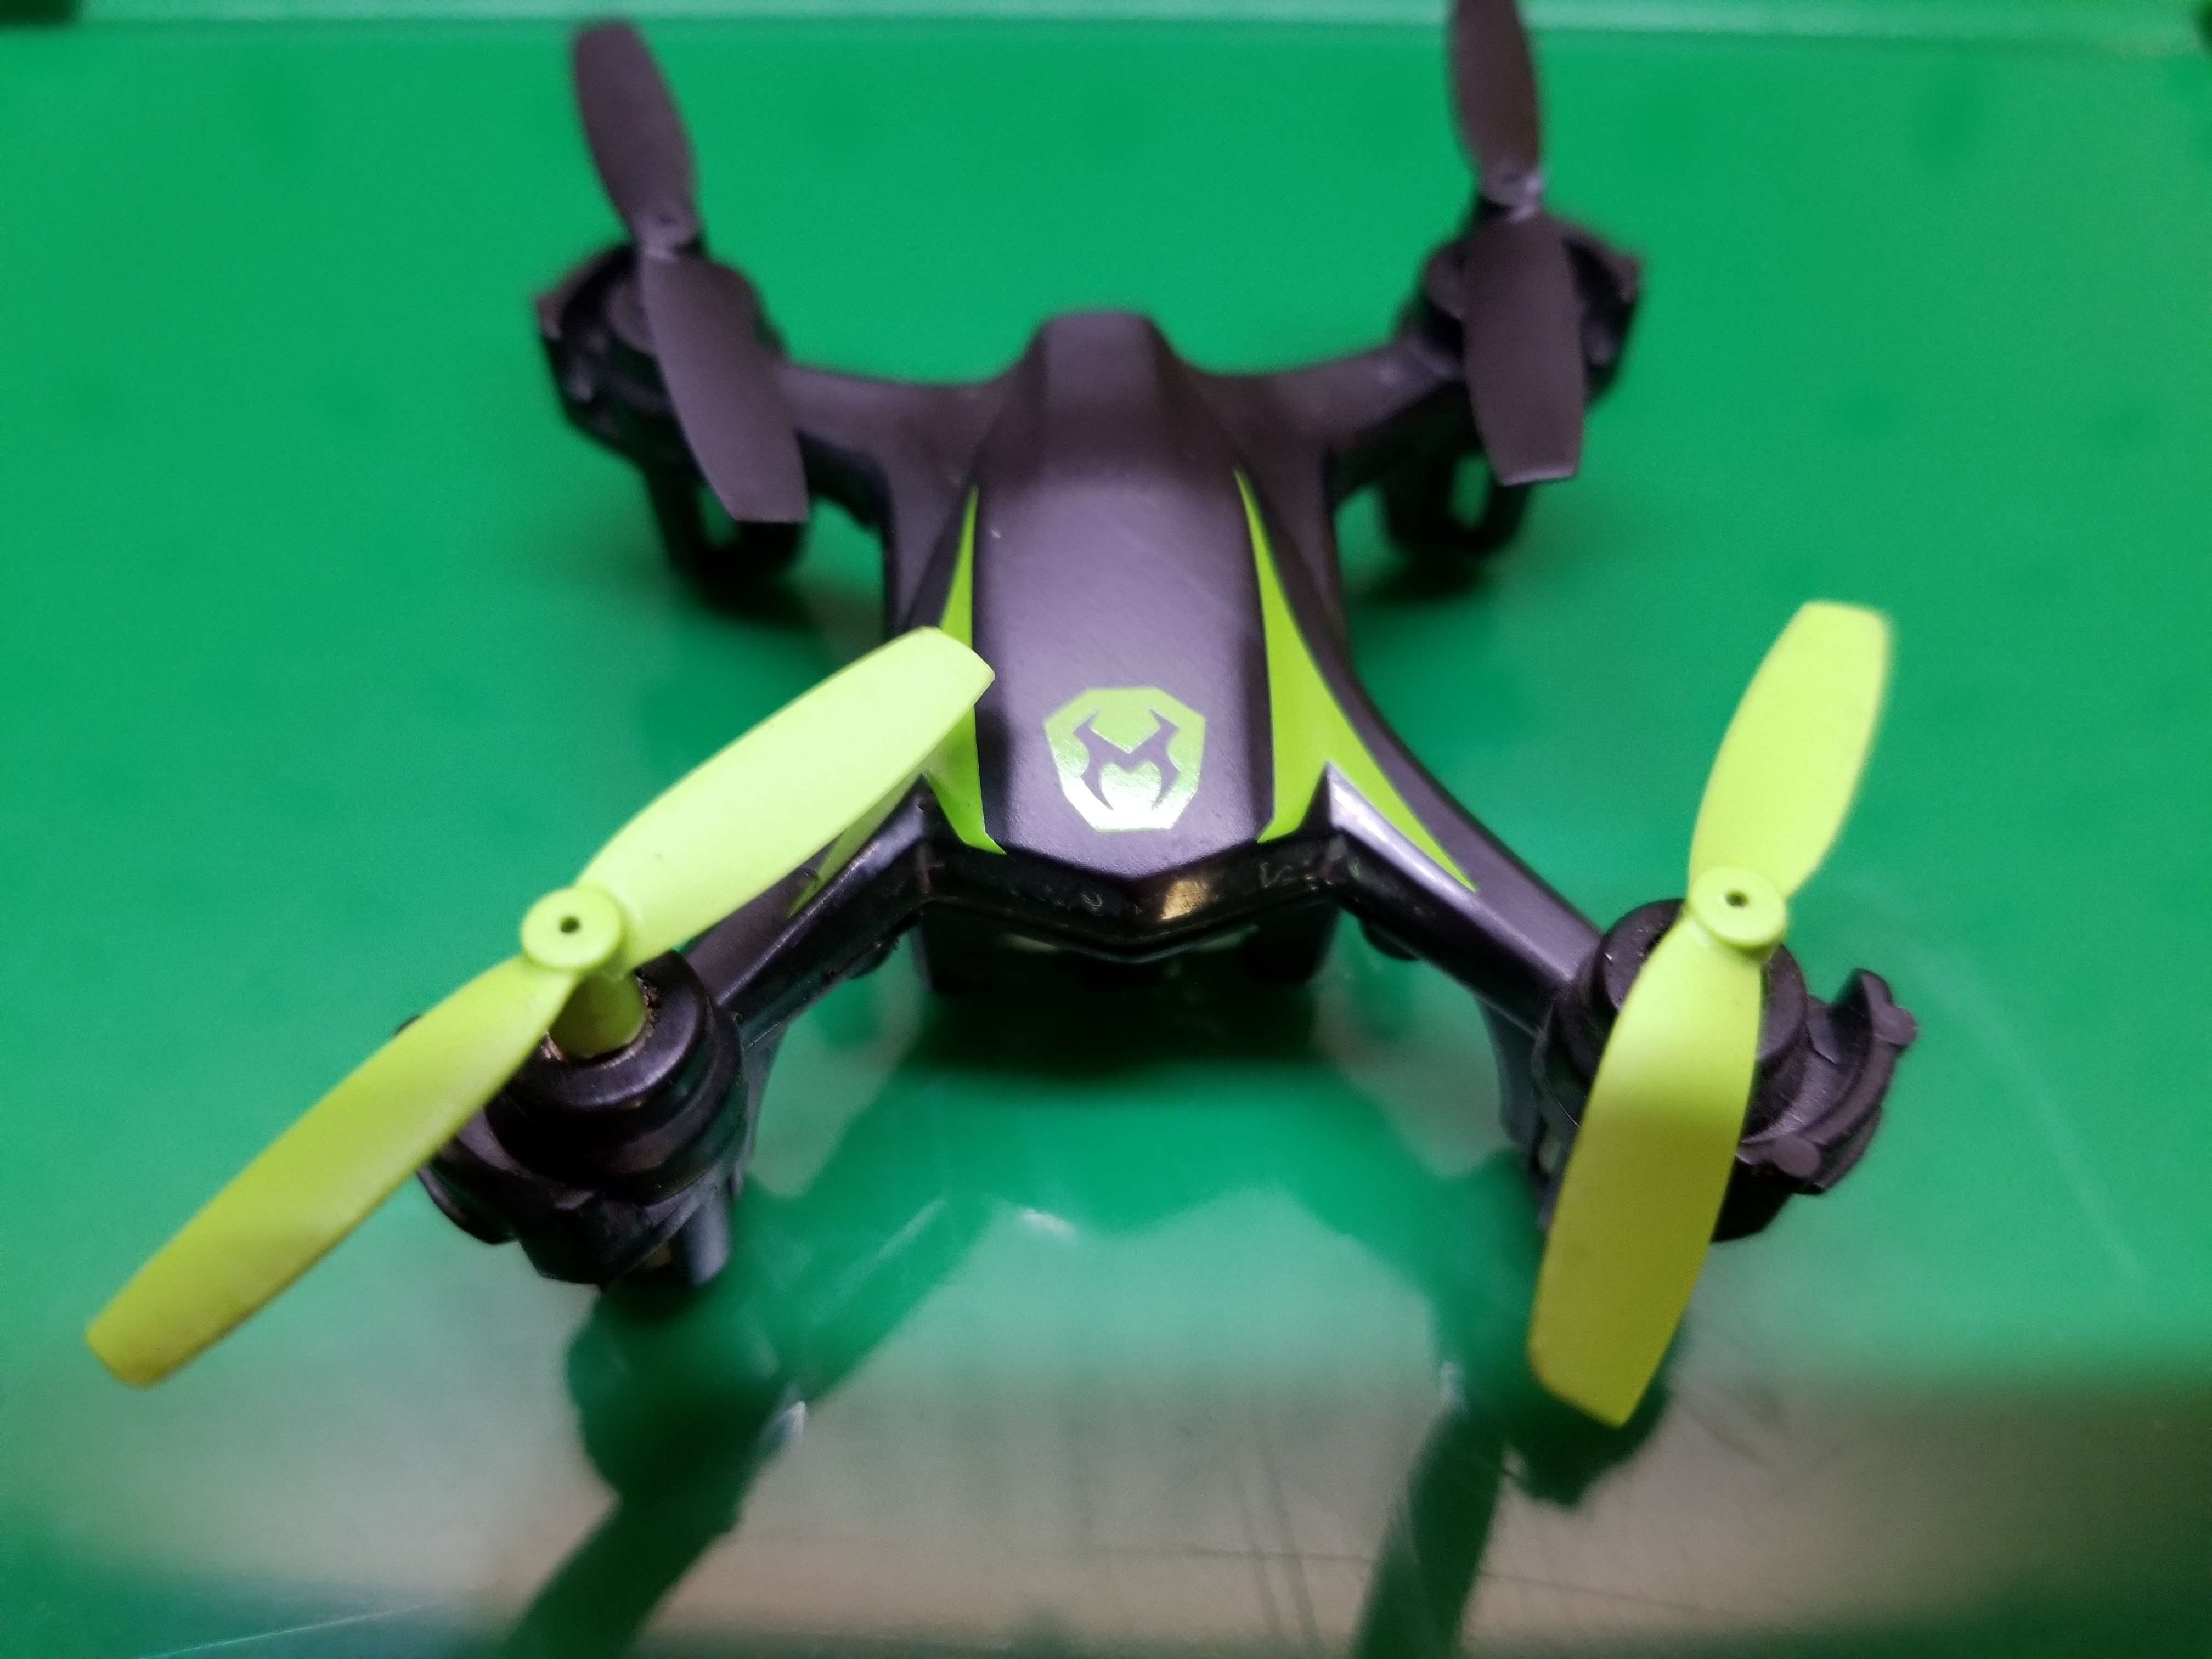 Sky Viper m550 nano drone